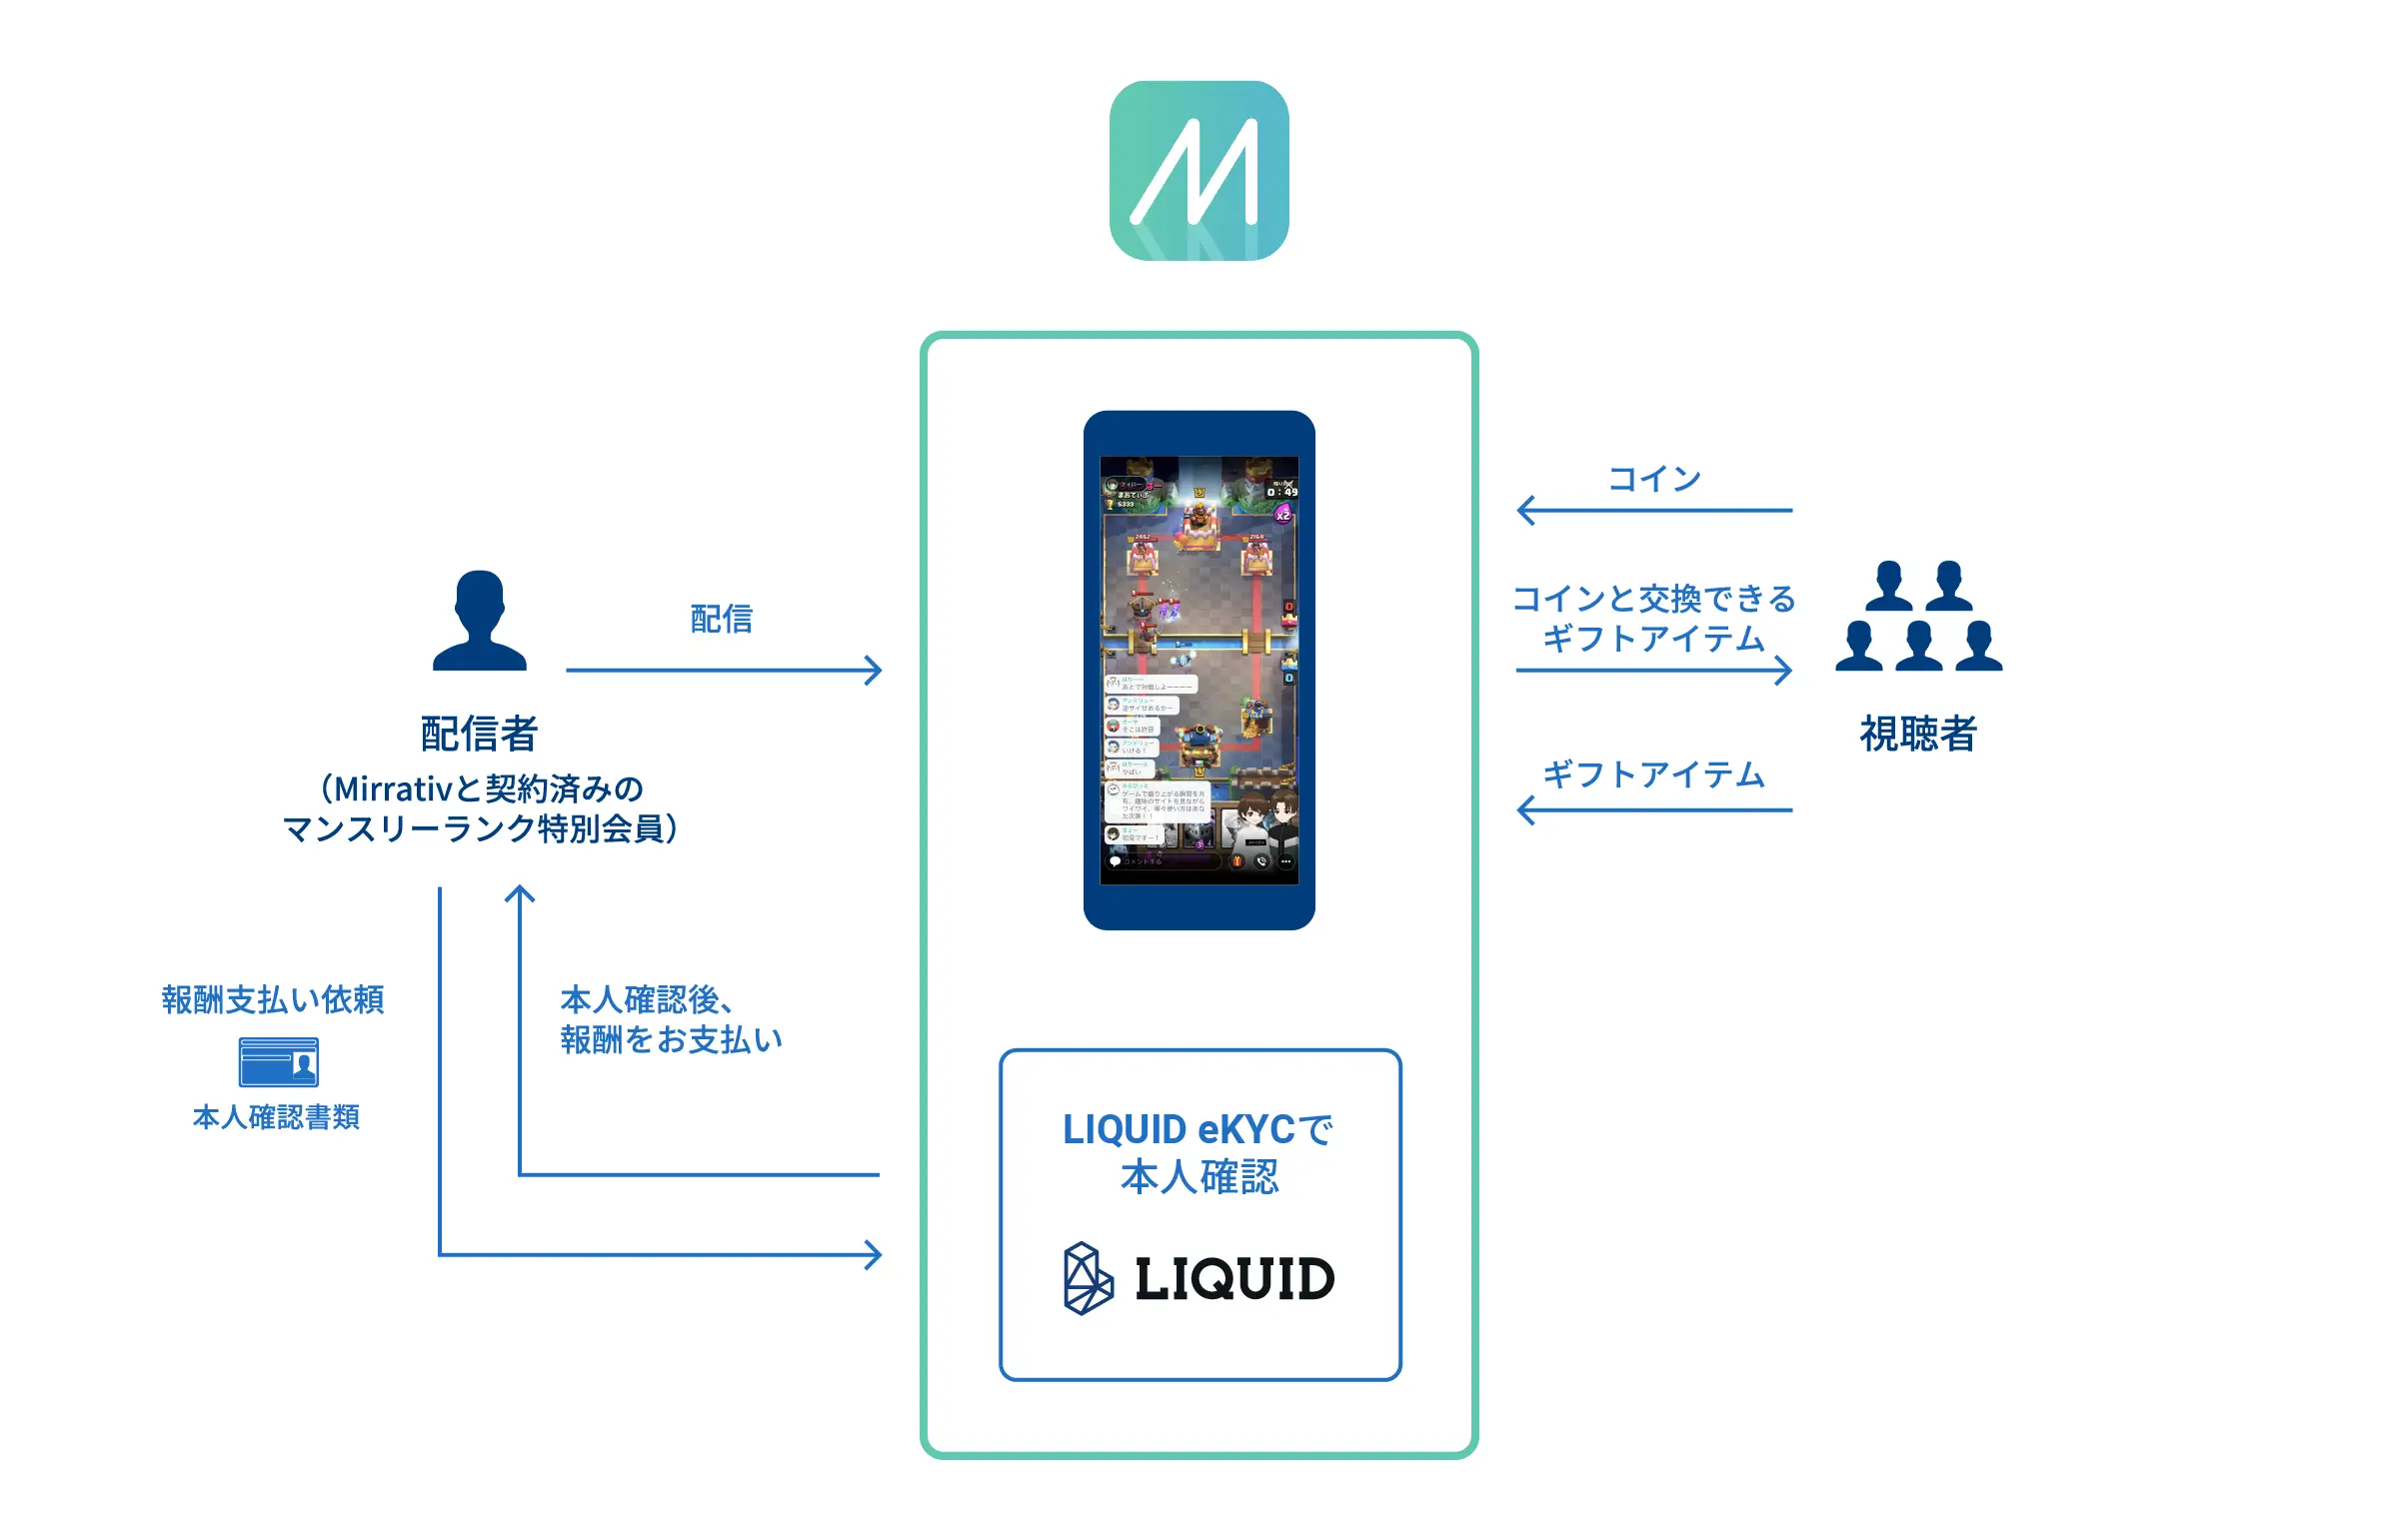 ミラティブ、スマホゲーム配信者数で日本一のゲーム配信サービス「Mirrativ」にてマンスリーランク特別会員に対する報酬を支払いで本人確認サービス「LIQUID eKYC」導入